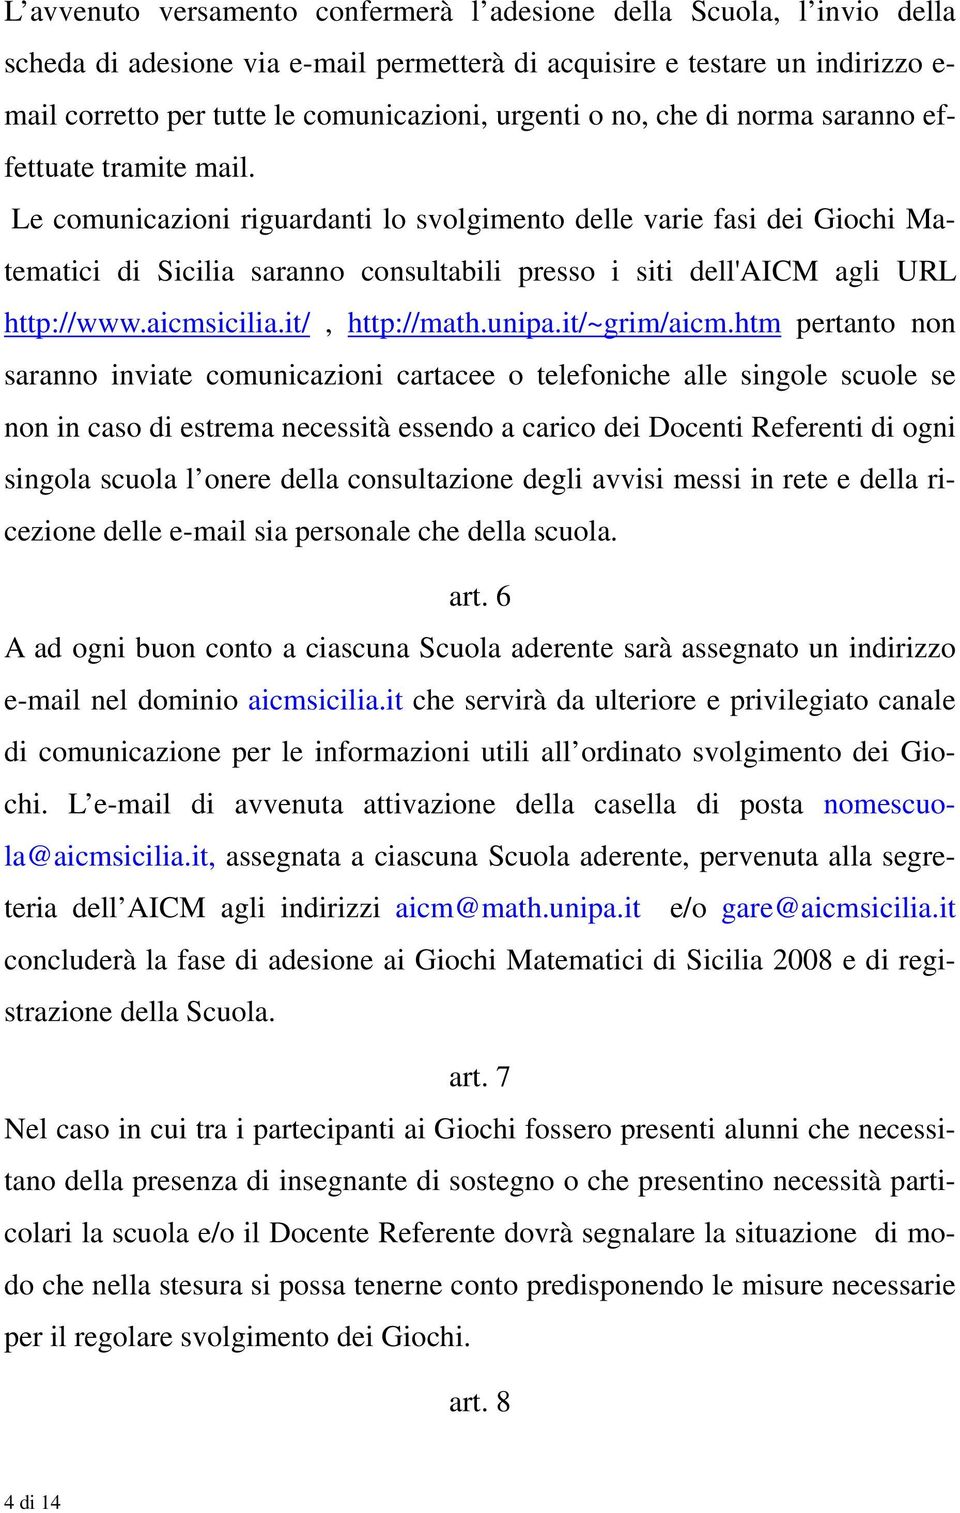 Le comunicazioni riguardanti lo svolgimento delle varie fasi dei Giochi Matematici di Sicilia saranno consultabili presso i siti dell'aicm agli URL http://www.aicmsicilia.it/, http://math.unipa.